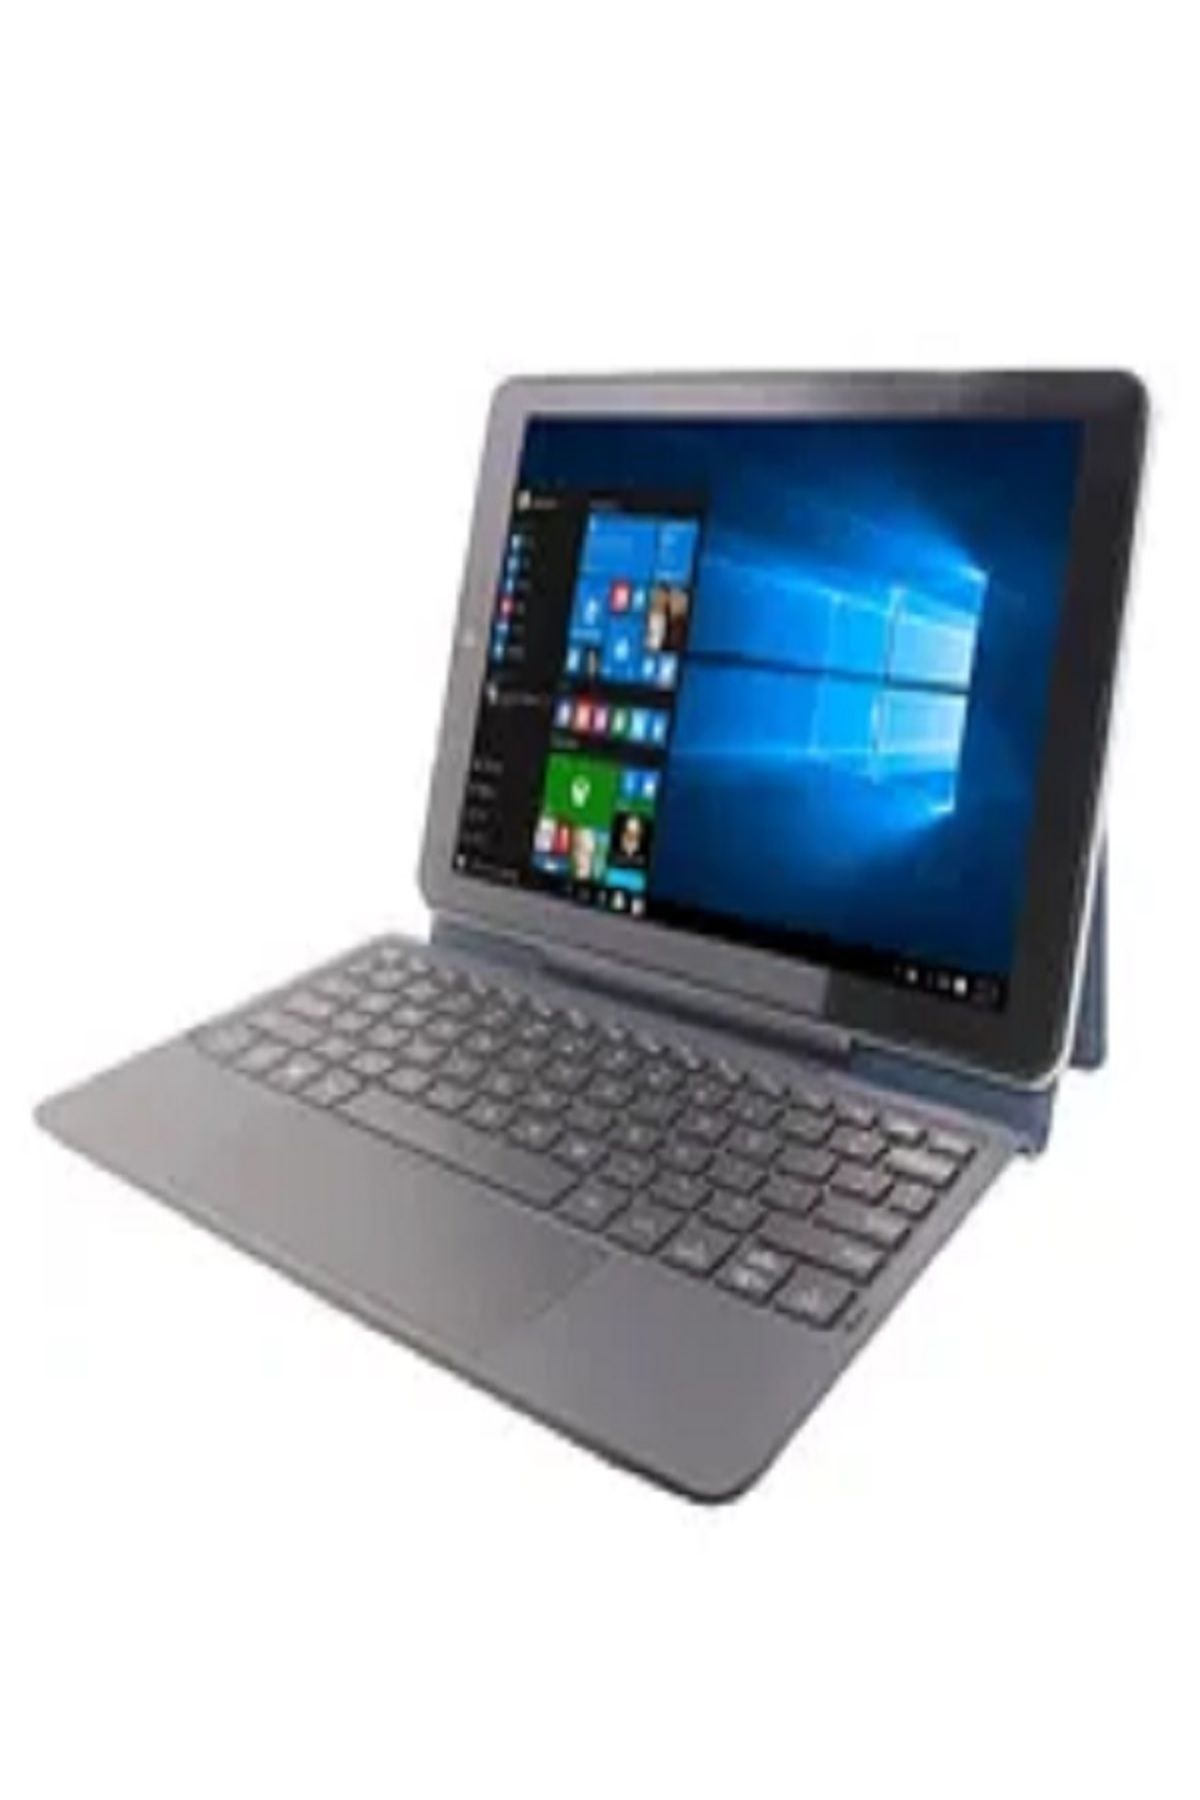 FOSILAVM Yeni 10.1 inç F102 Tablet PC WINDOWS 10 Z8350 CPU 2GB+ 32GB WIFI dört çekirdekli